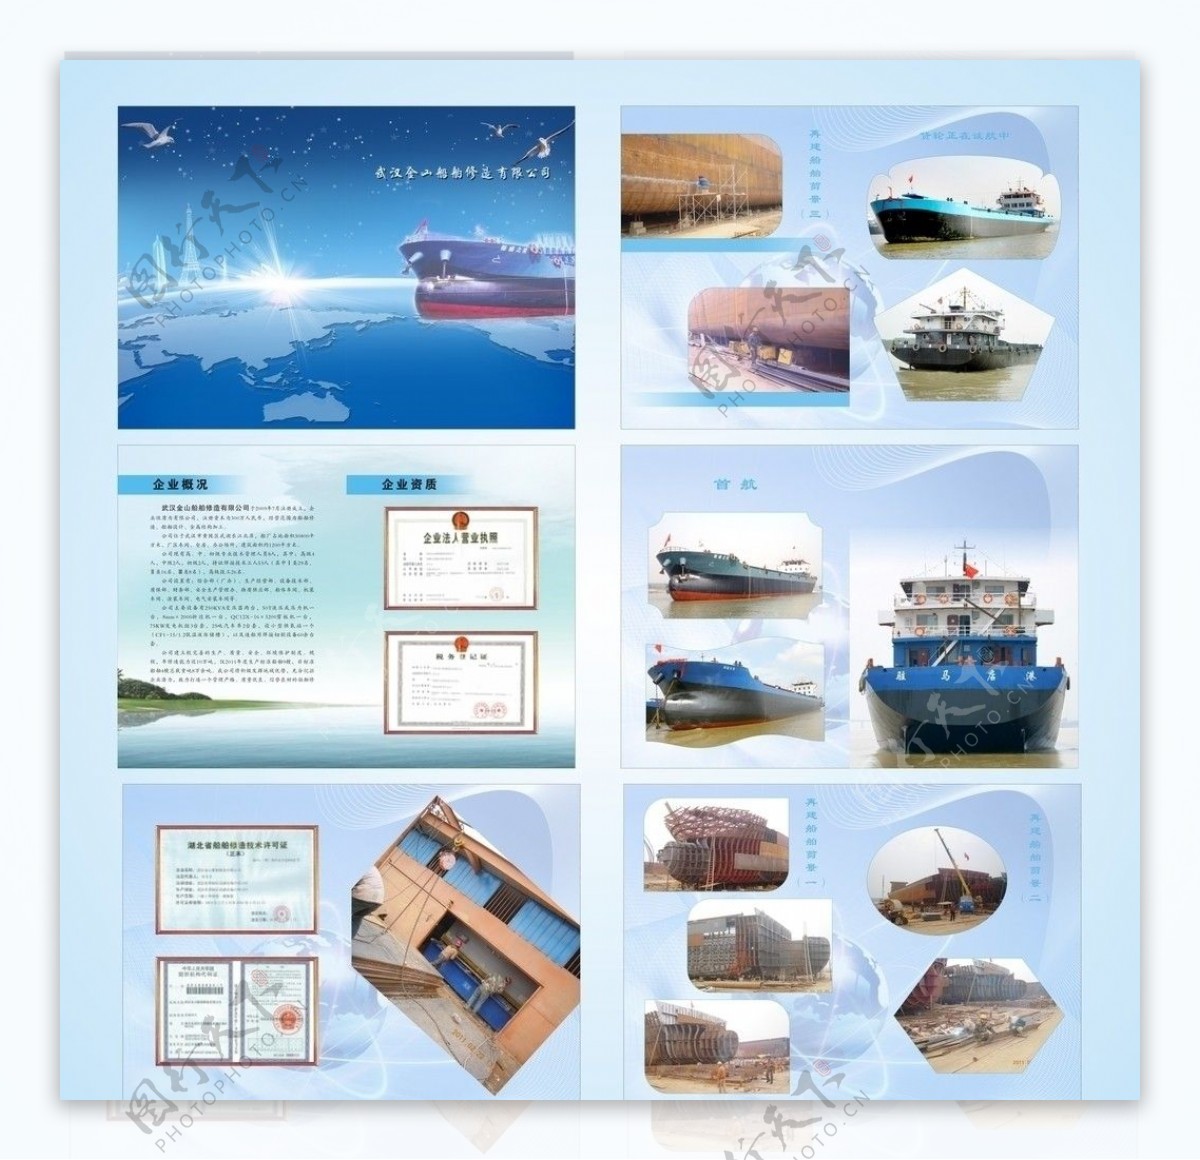 船舶宣传册注文件在第10个页面图片